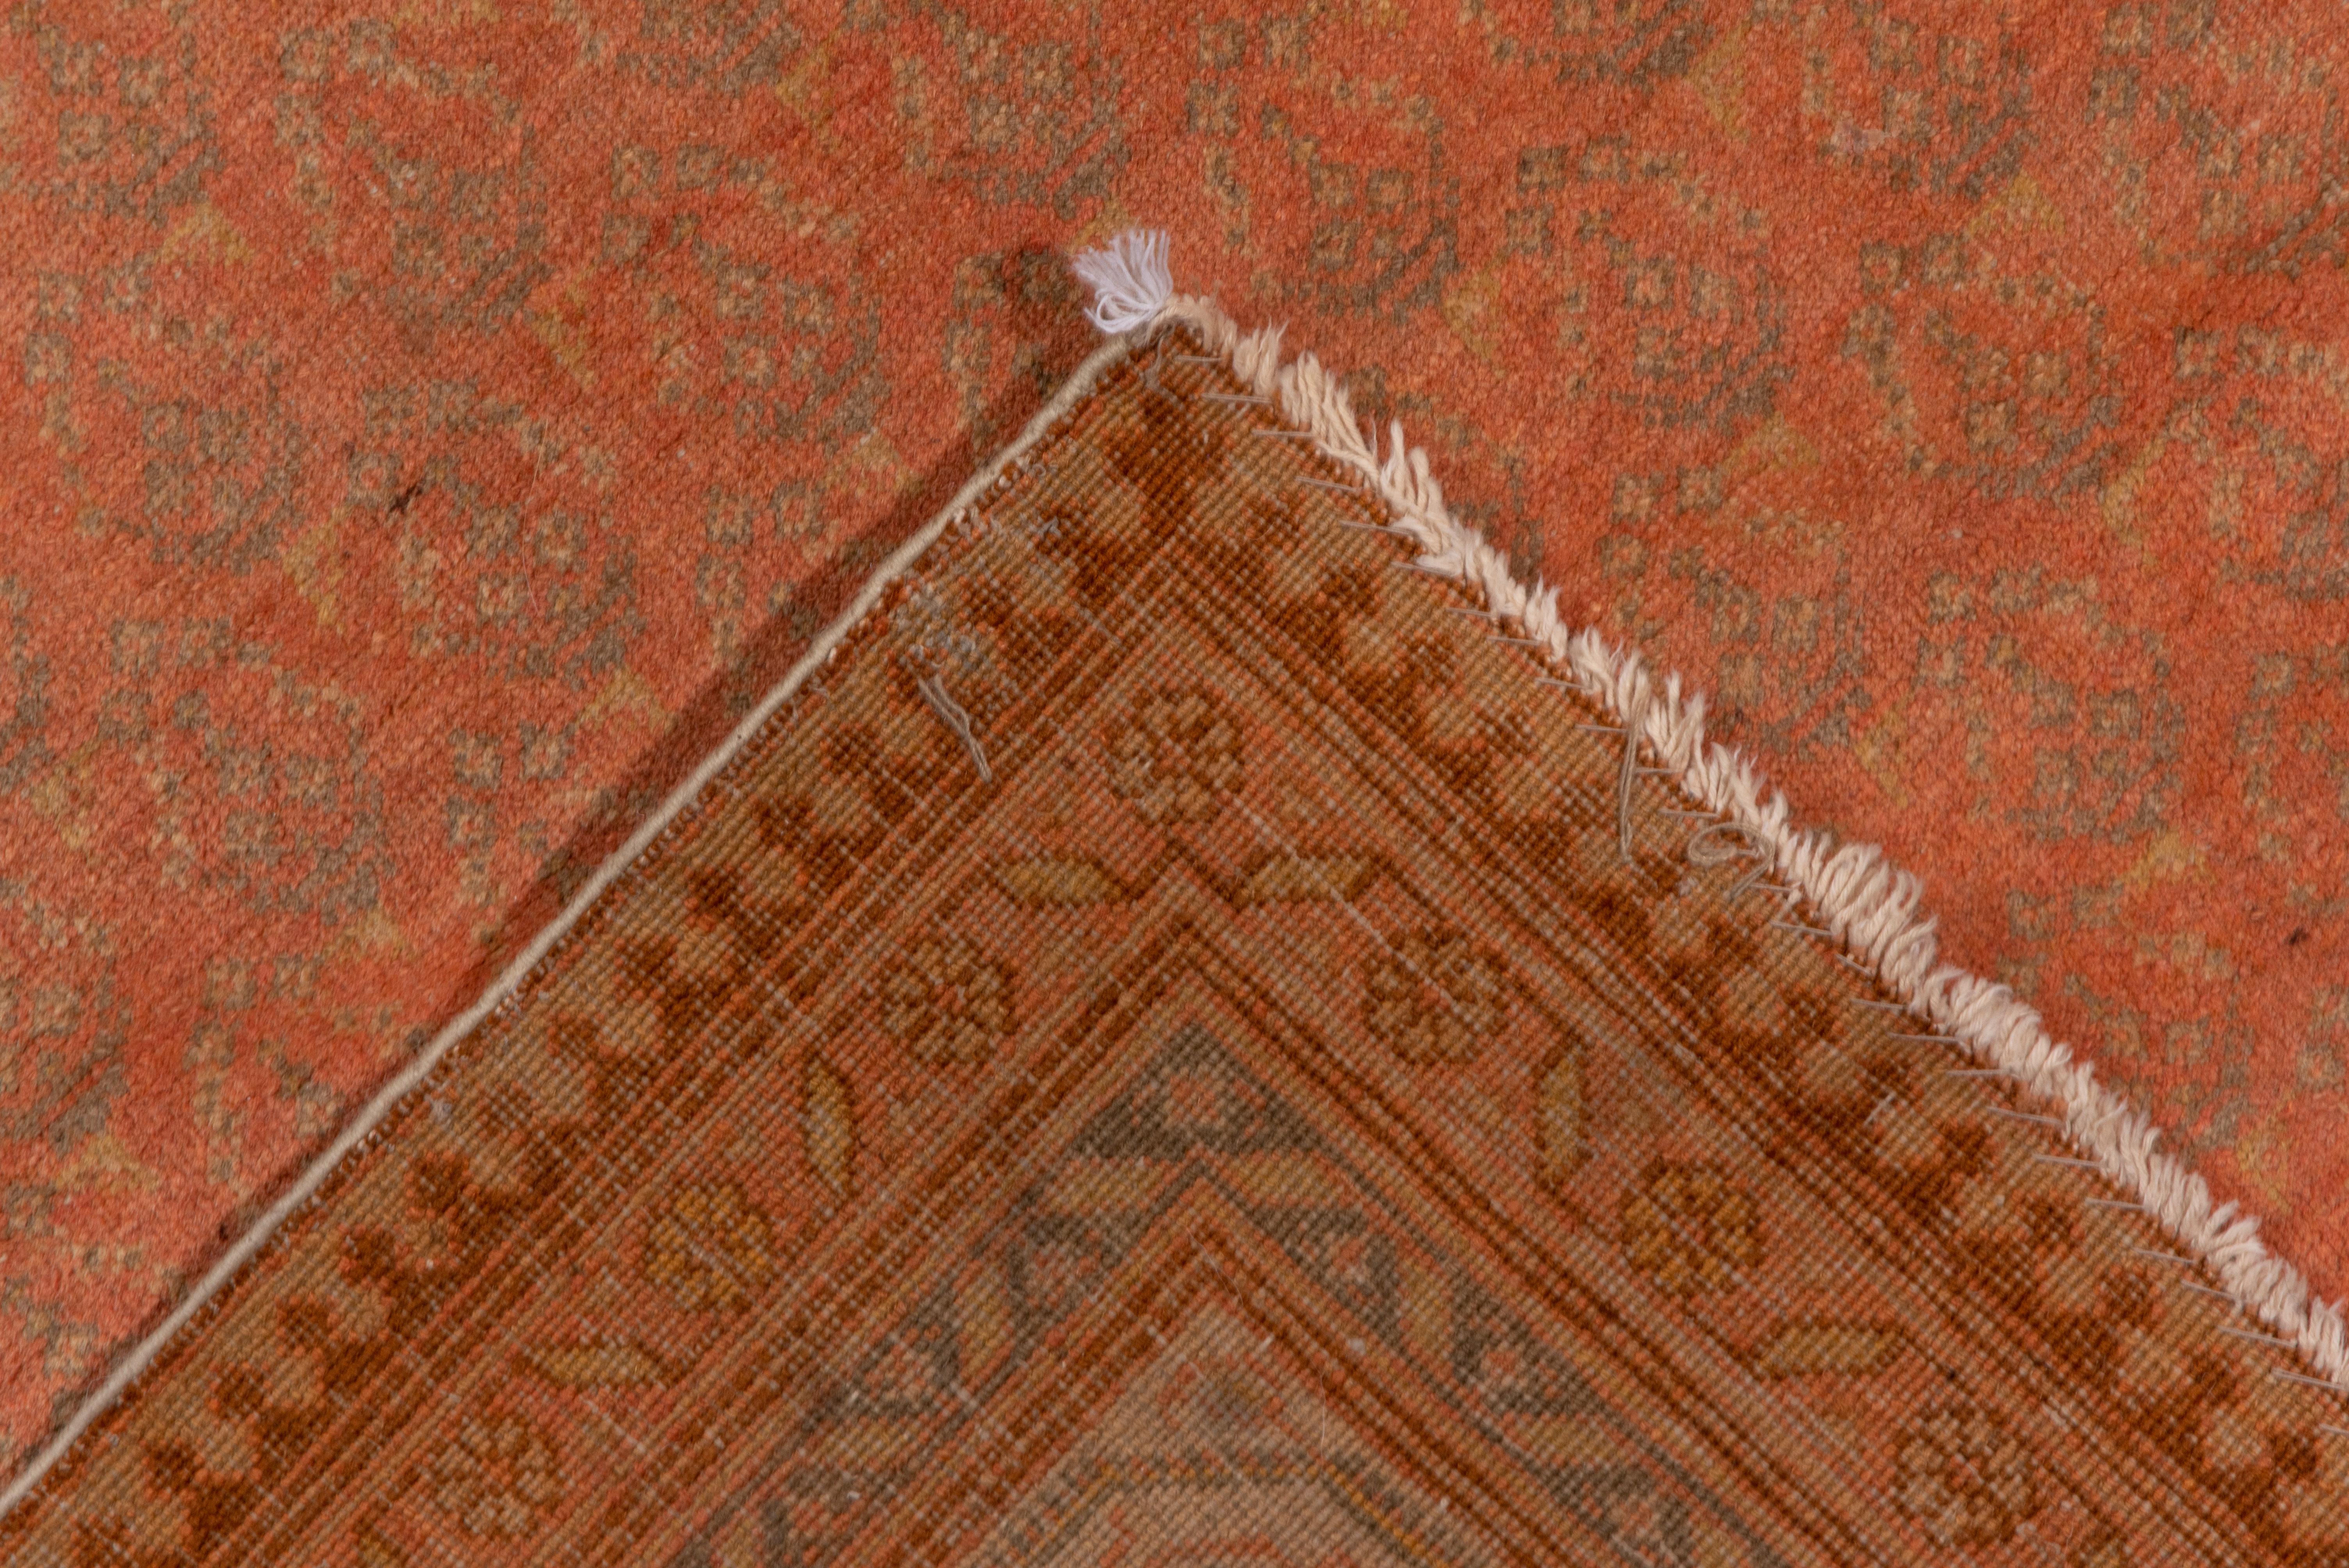 Antique Saraband Design Carpet, Orange Tones, Indian Origin, circa 1920s In Good Condition For Sale In New York, NY